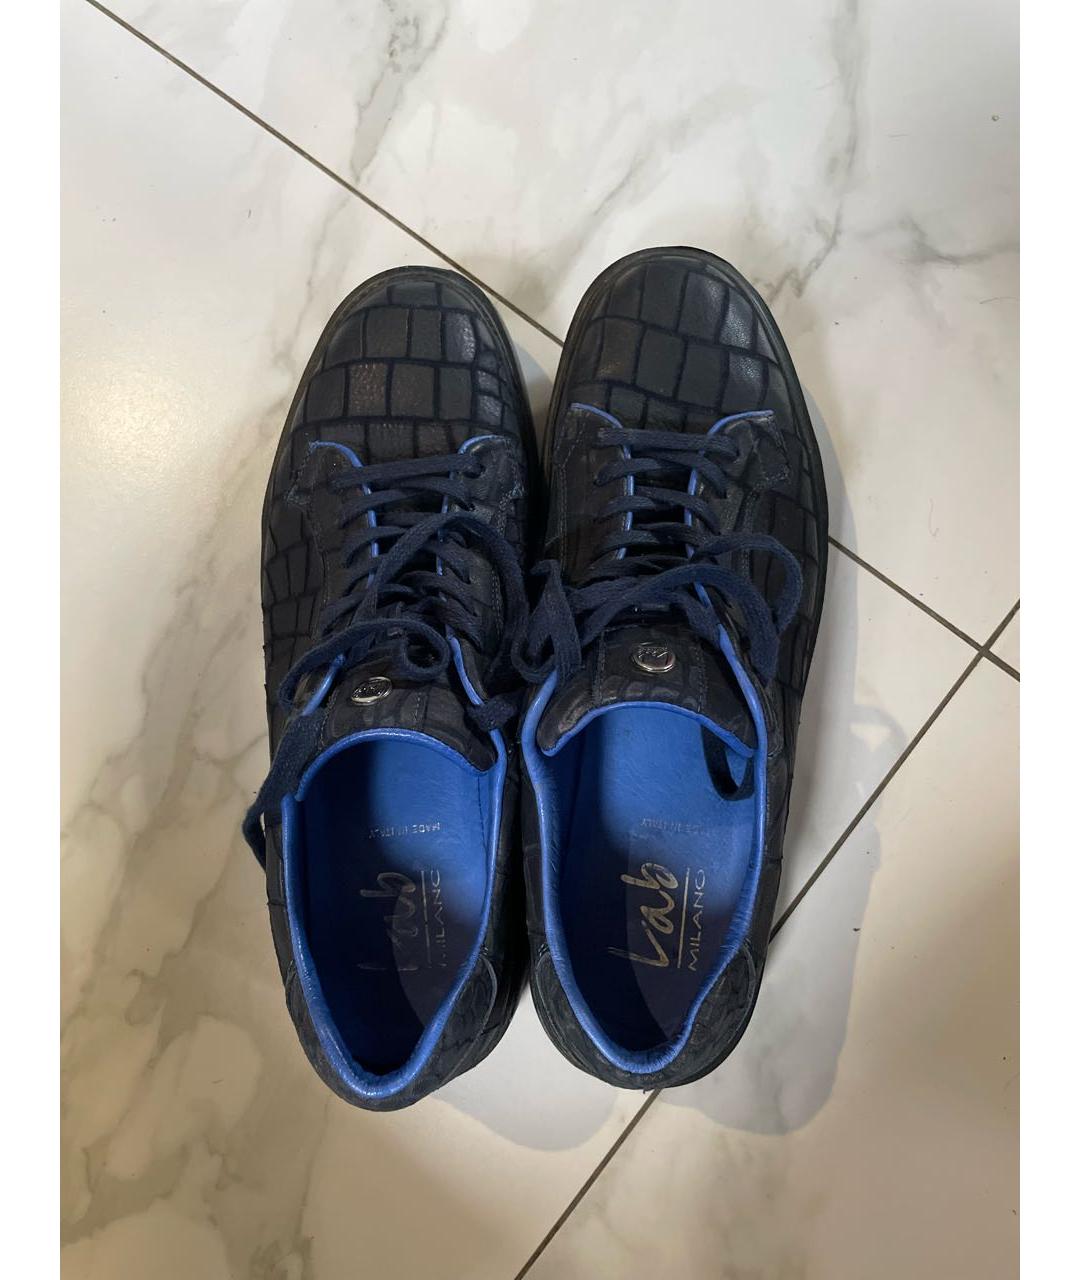 3LAB Темно-синие кожаные низкие кроссовки / кеды, фото 3